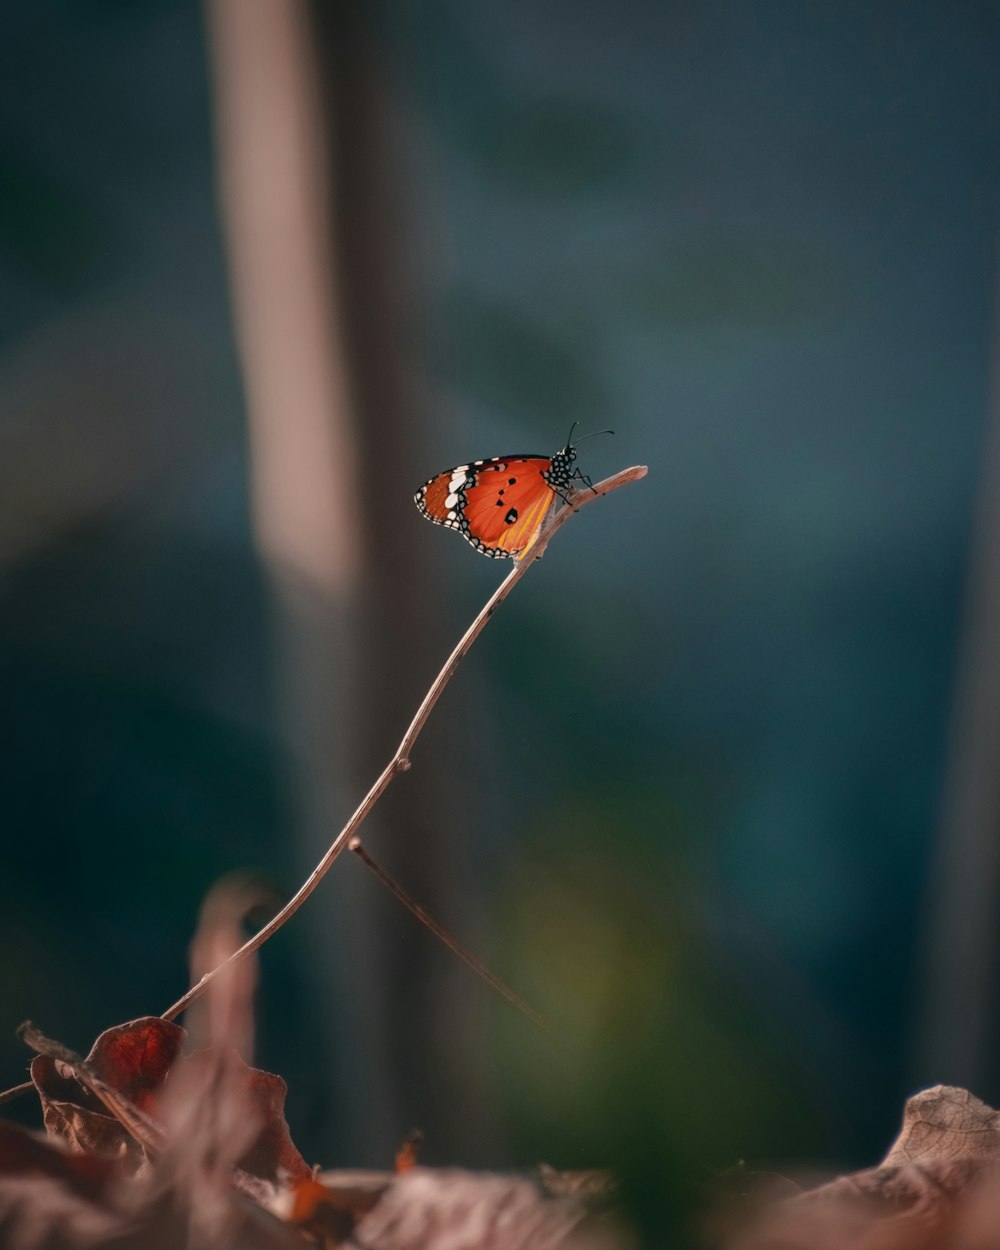 Mariposa marrón y blanca encaramada en el tallo marrón en fotografía de primer plano durante el día